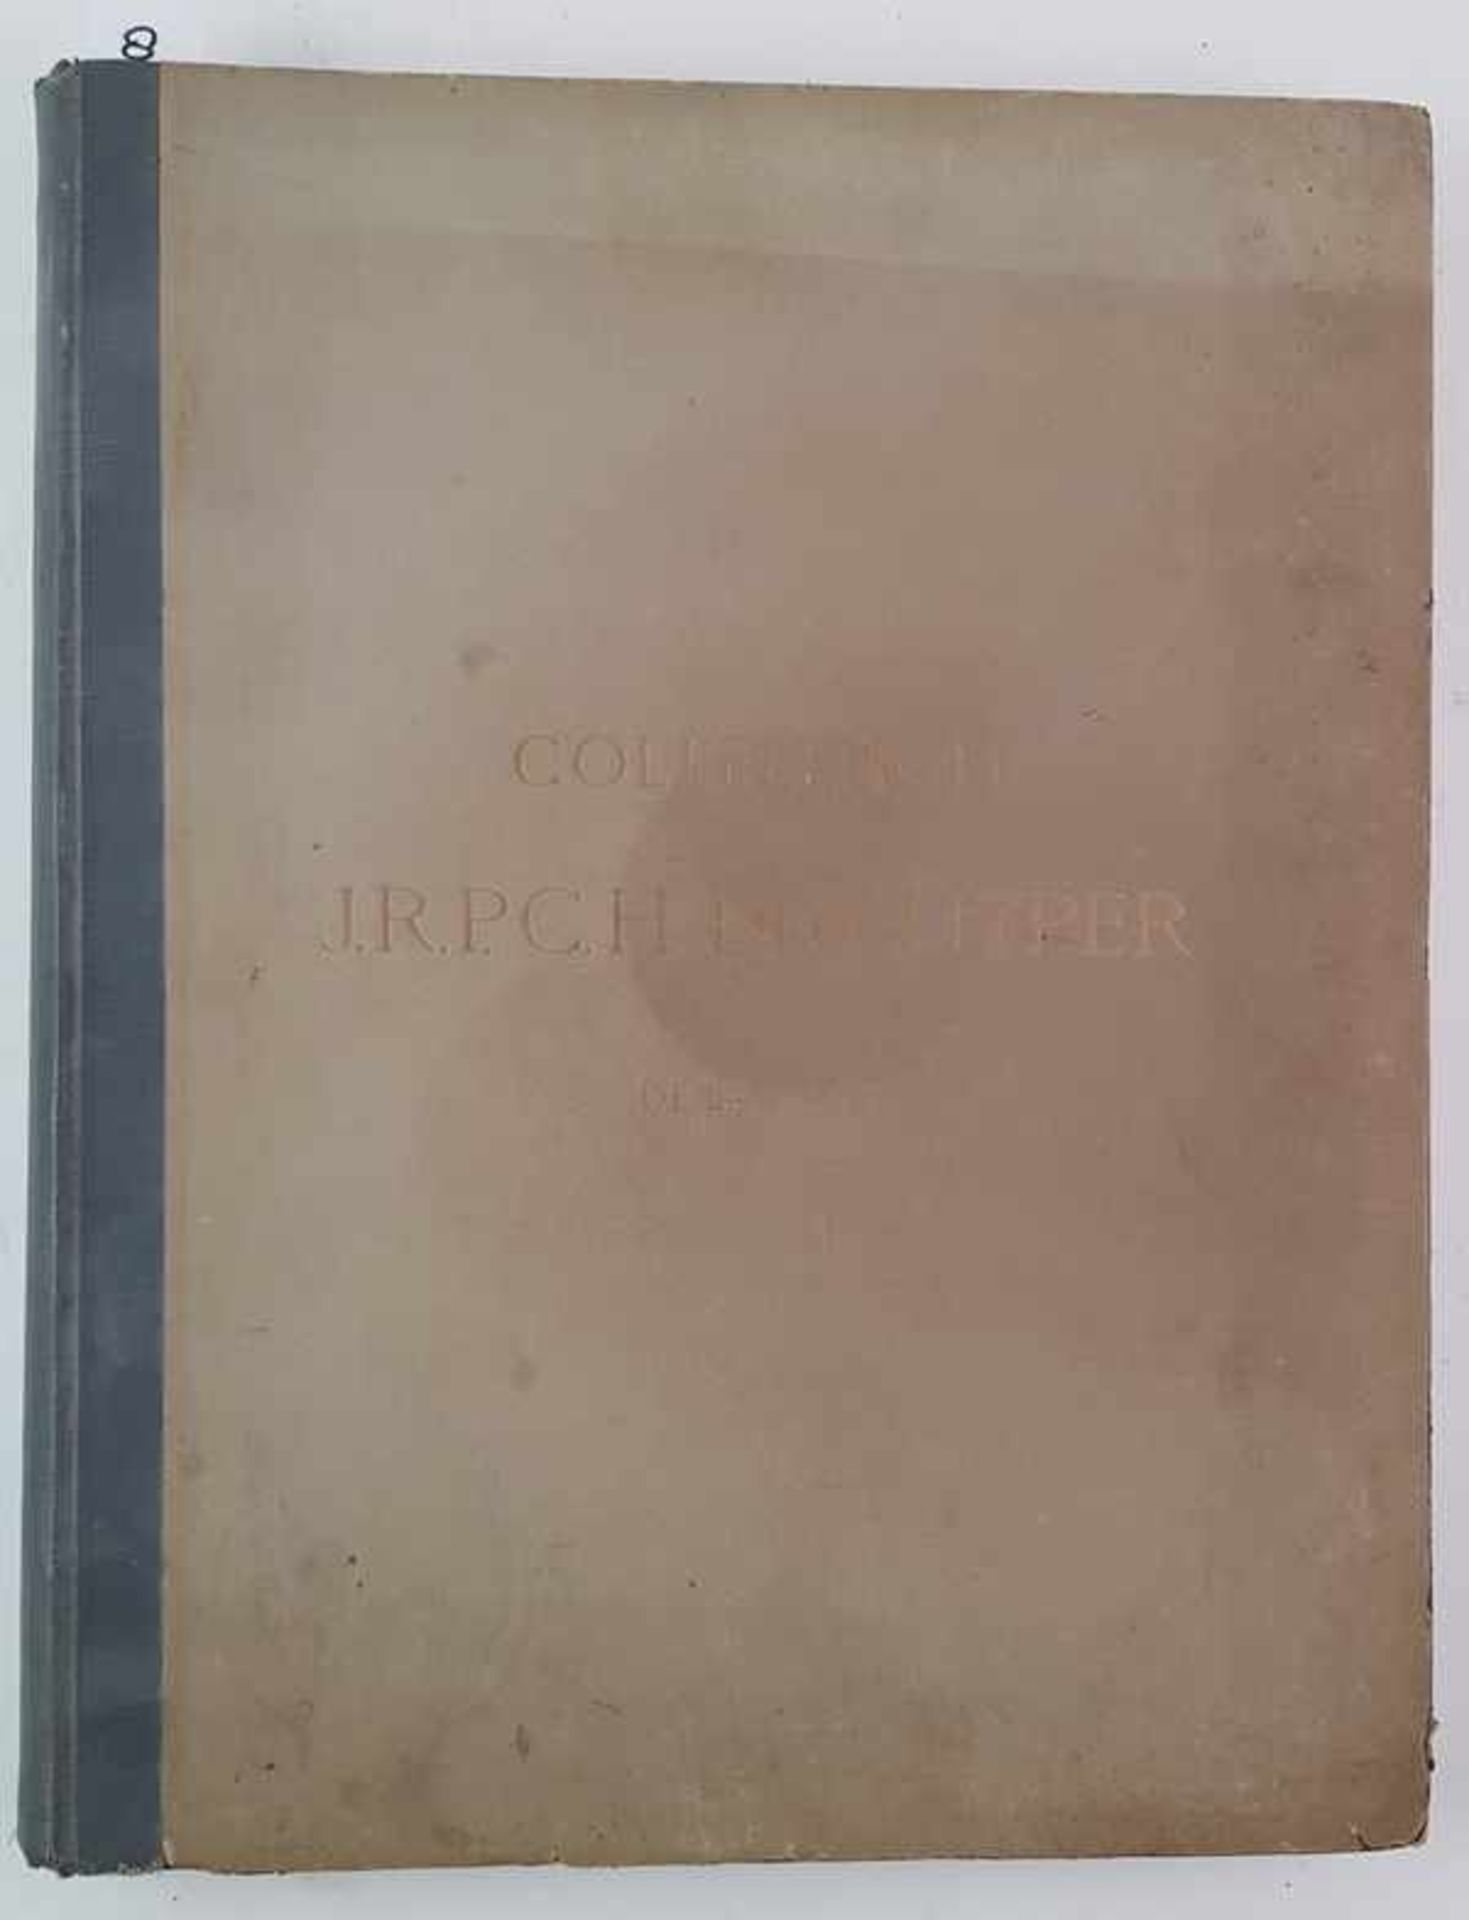 (Boeken) (Kunst) Collection J. R. P. C. H. de Kuyper de La Haye (1911)Collection J. R. P. C. H. - Bild 2 aus 19